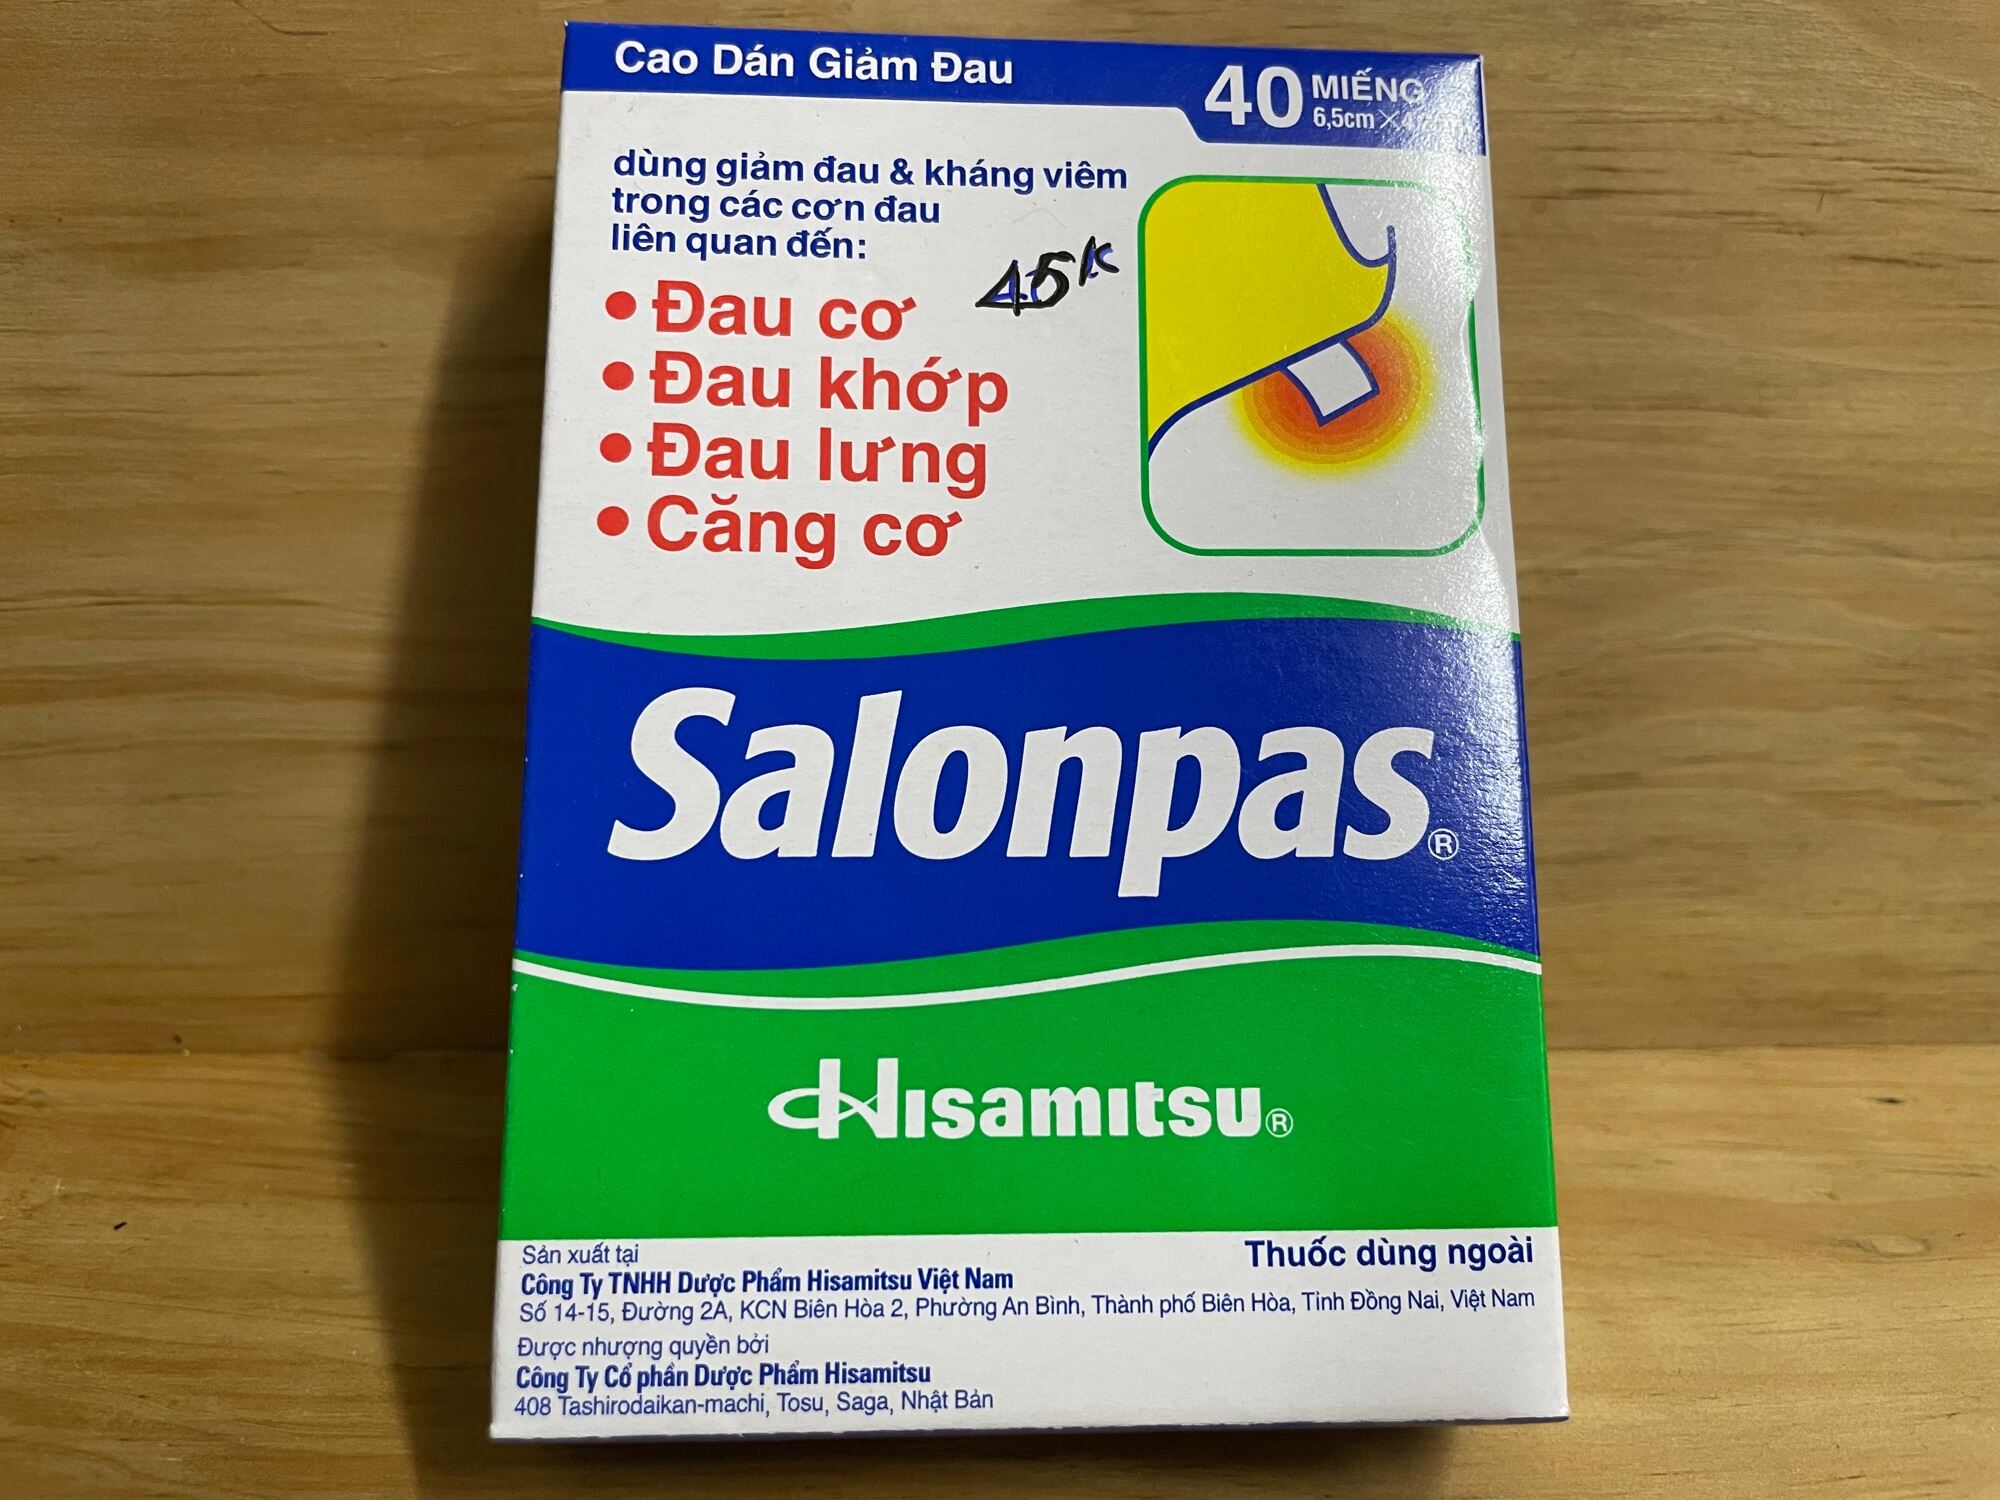 Cao dán giảm đau Salonpas, 40miếng 1hộp